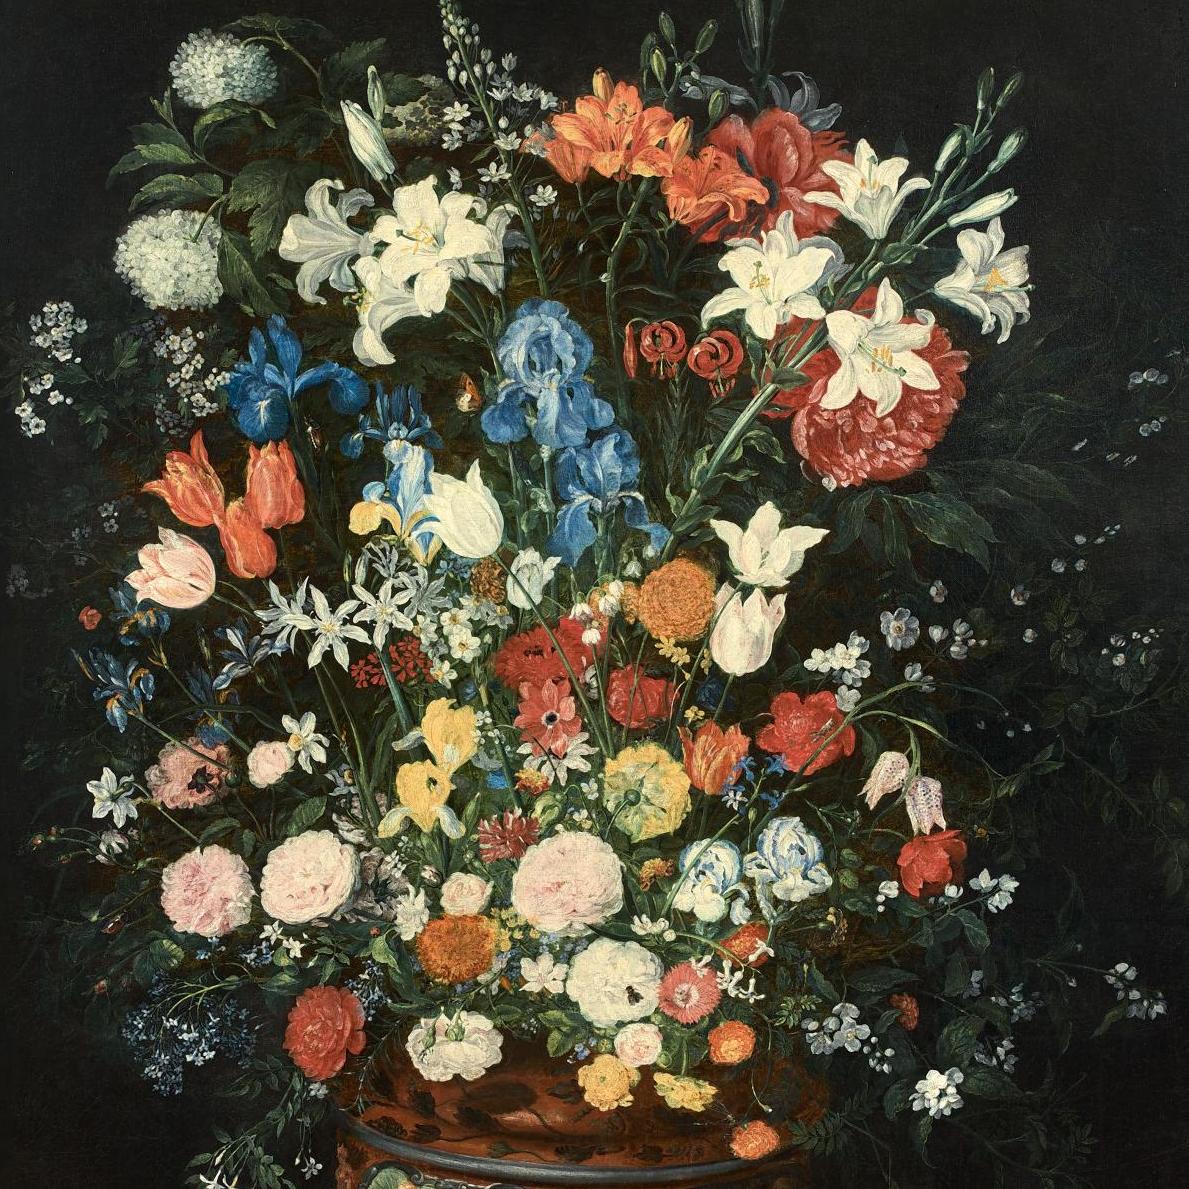 Bruegel père et fils, peintres de fleurs 